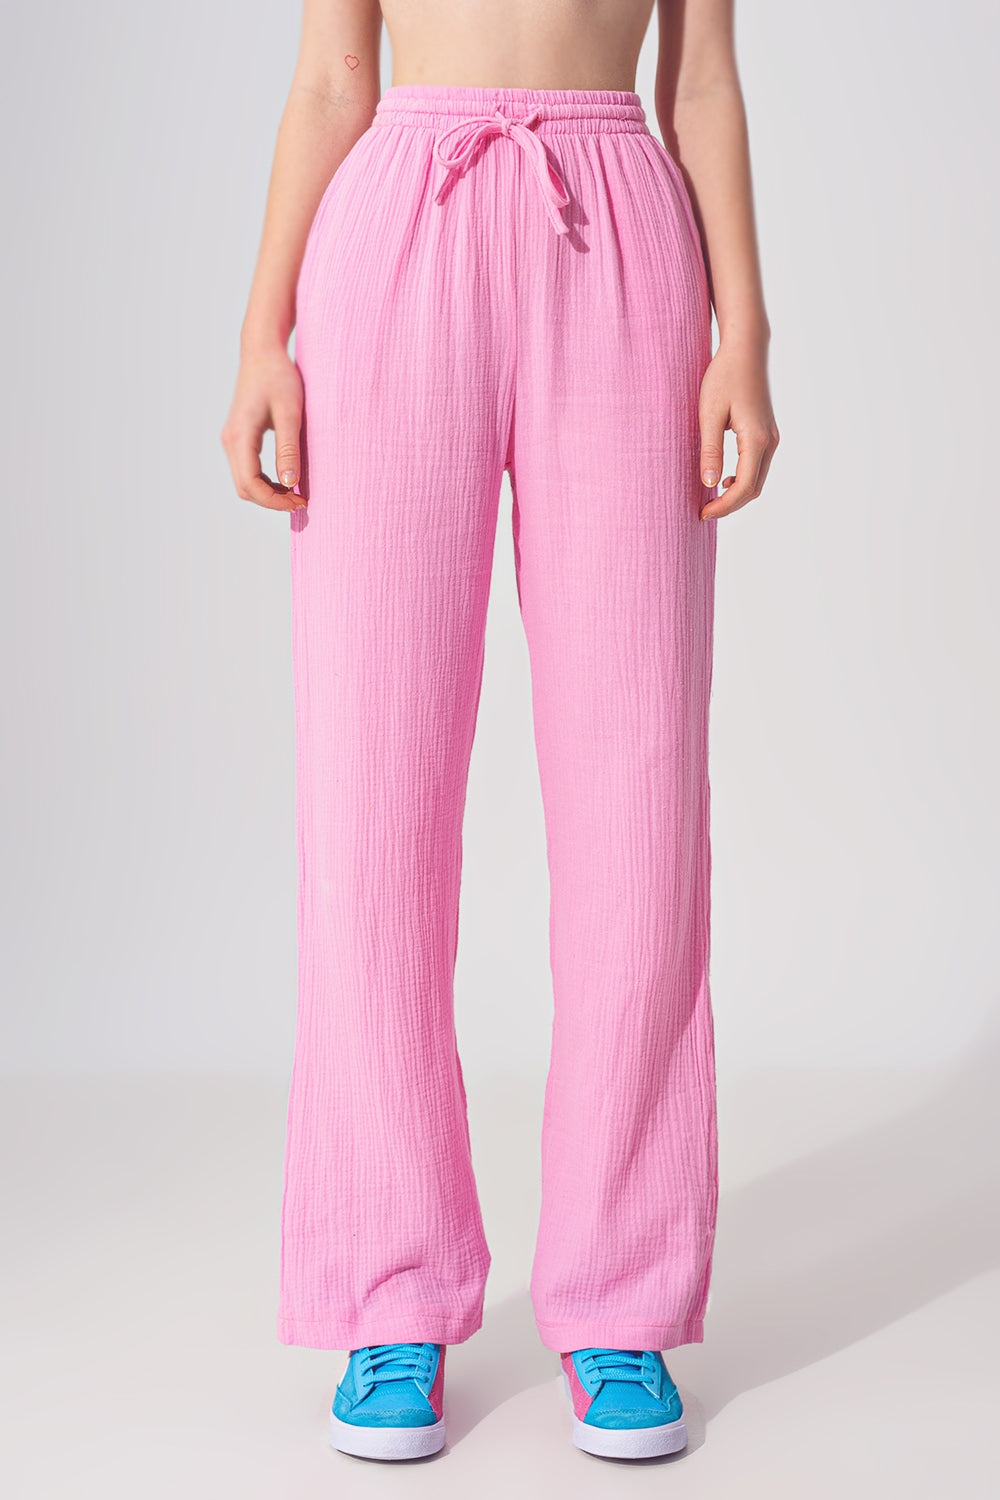 Pantalones holgados texturizados en rosa